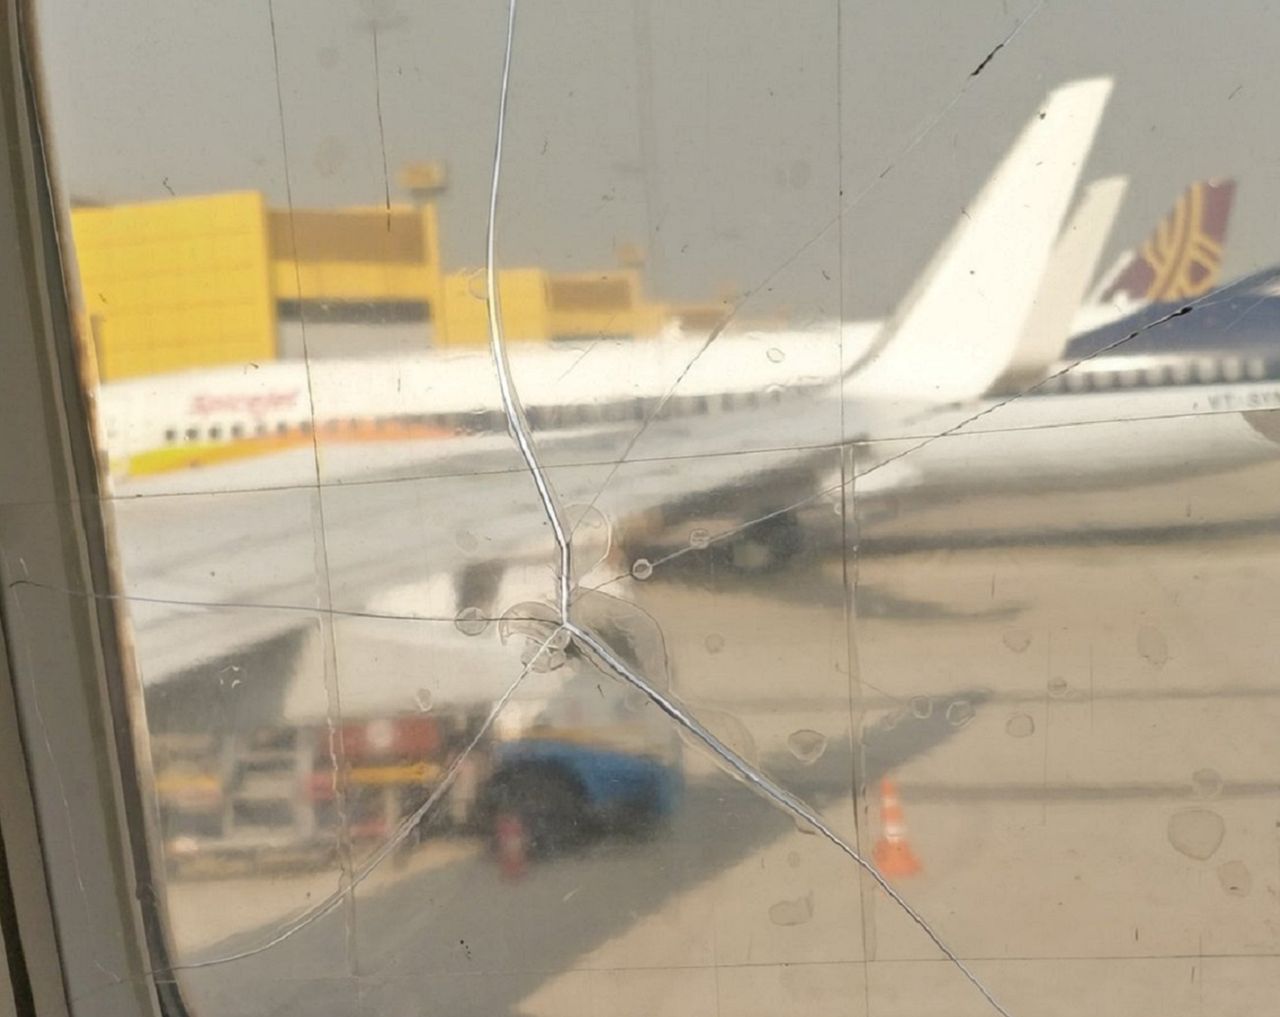 Samolot z pękniętym oknem. Pasażer zgłosił usterkę, którą personel...naprawił taśmą klejącą